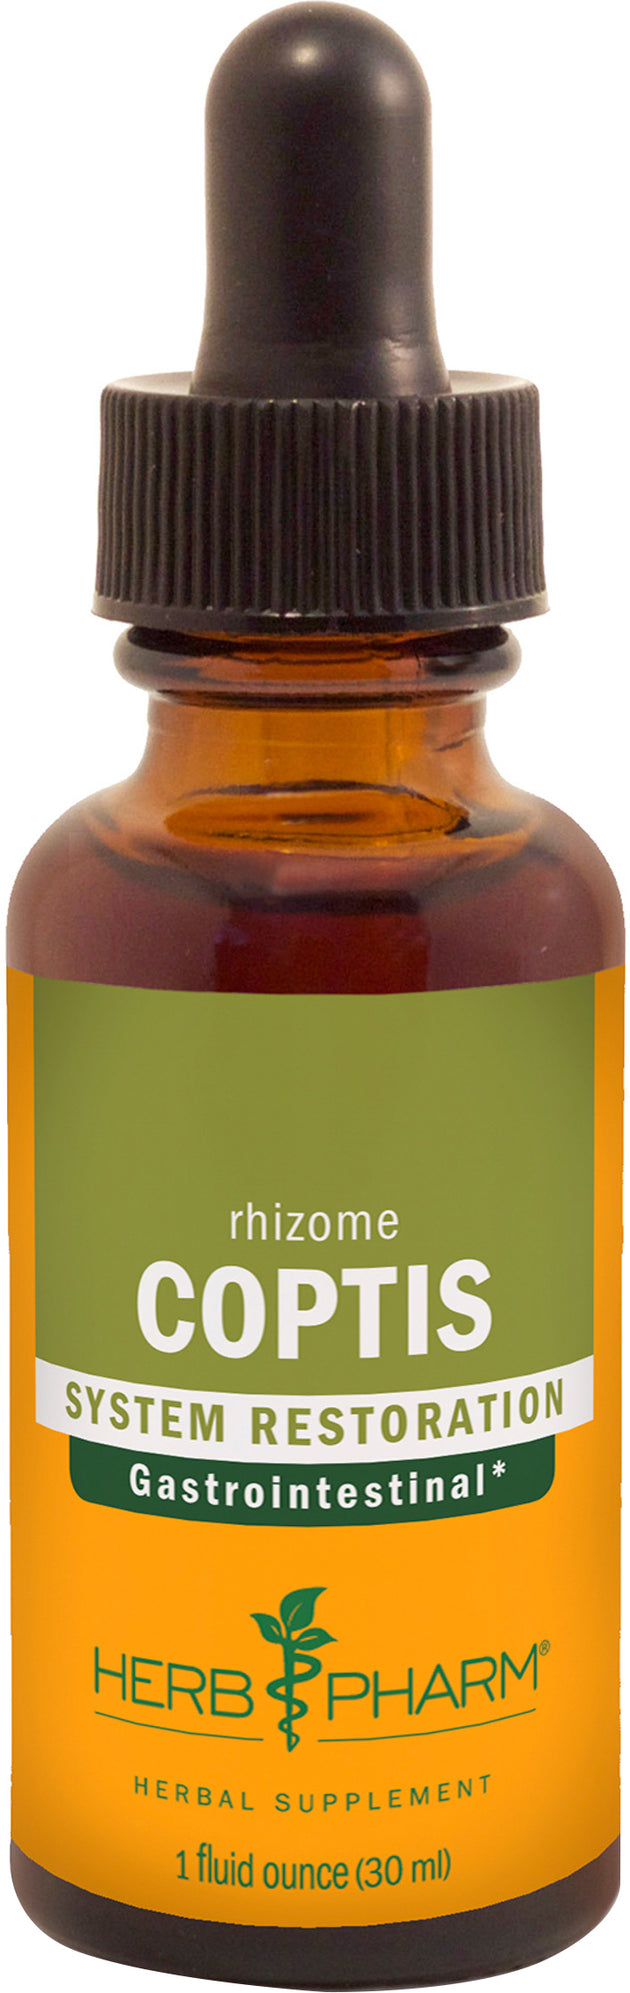 Rhizome Coptis, 1 Fl Oz (30 mL) Liquid , Brand_Herb Pharm Form_Liquid Size_1 Fl Oz